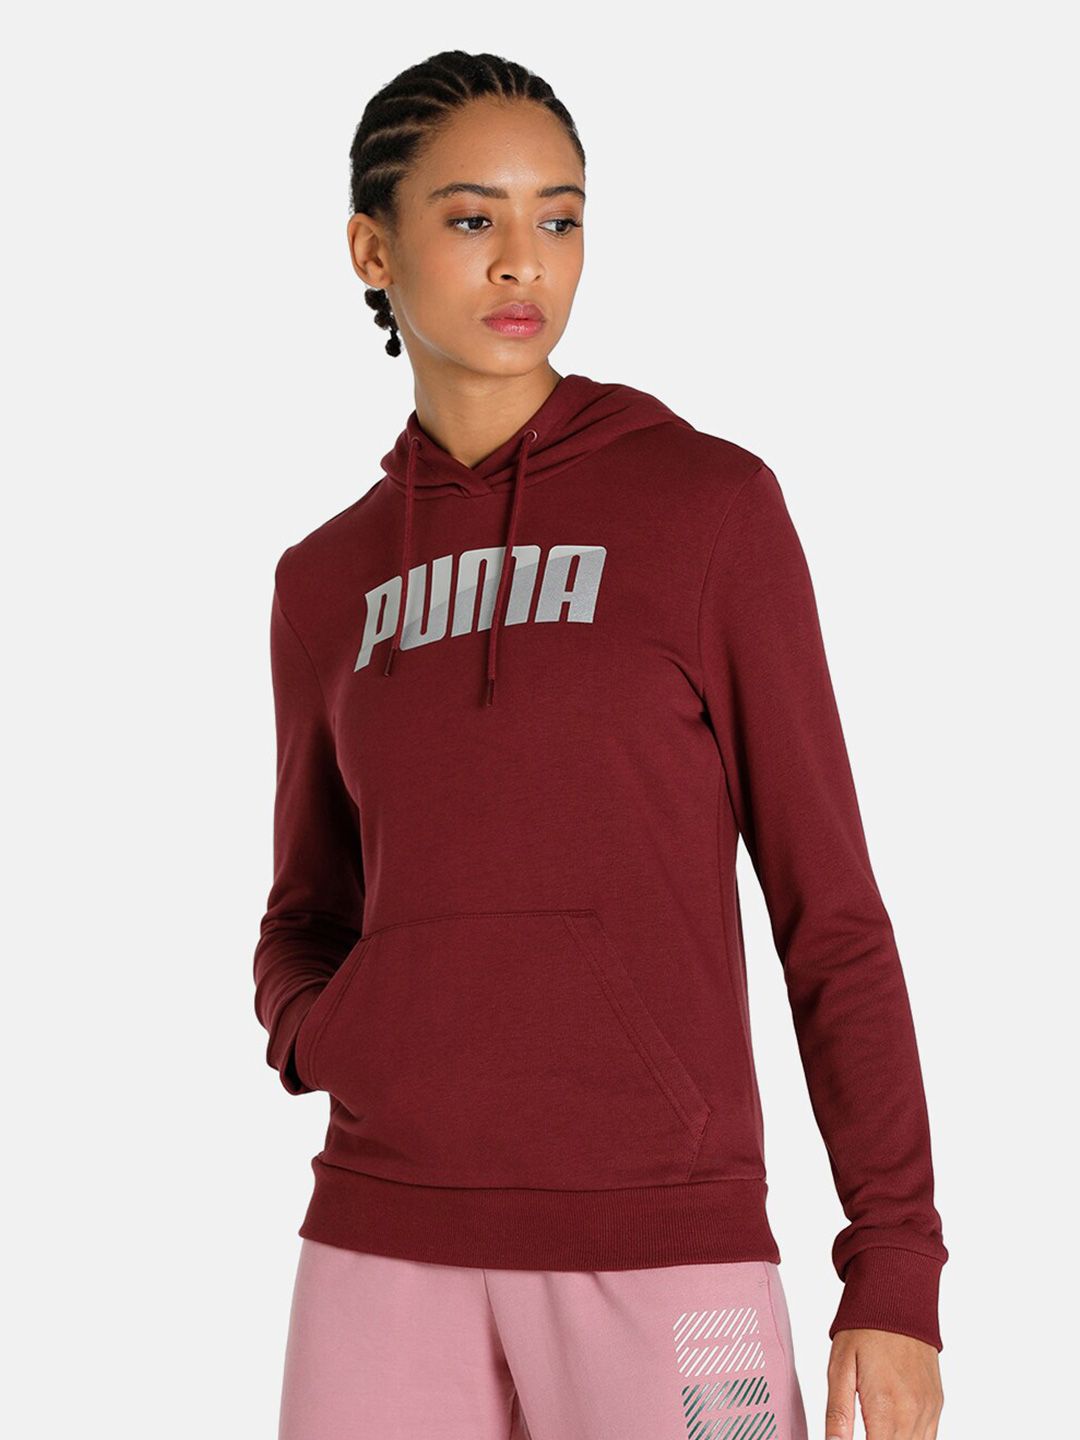 Puma Women Maroon Printed Hooded Sweatshirt Price in India